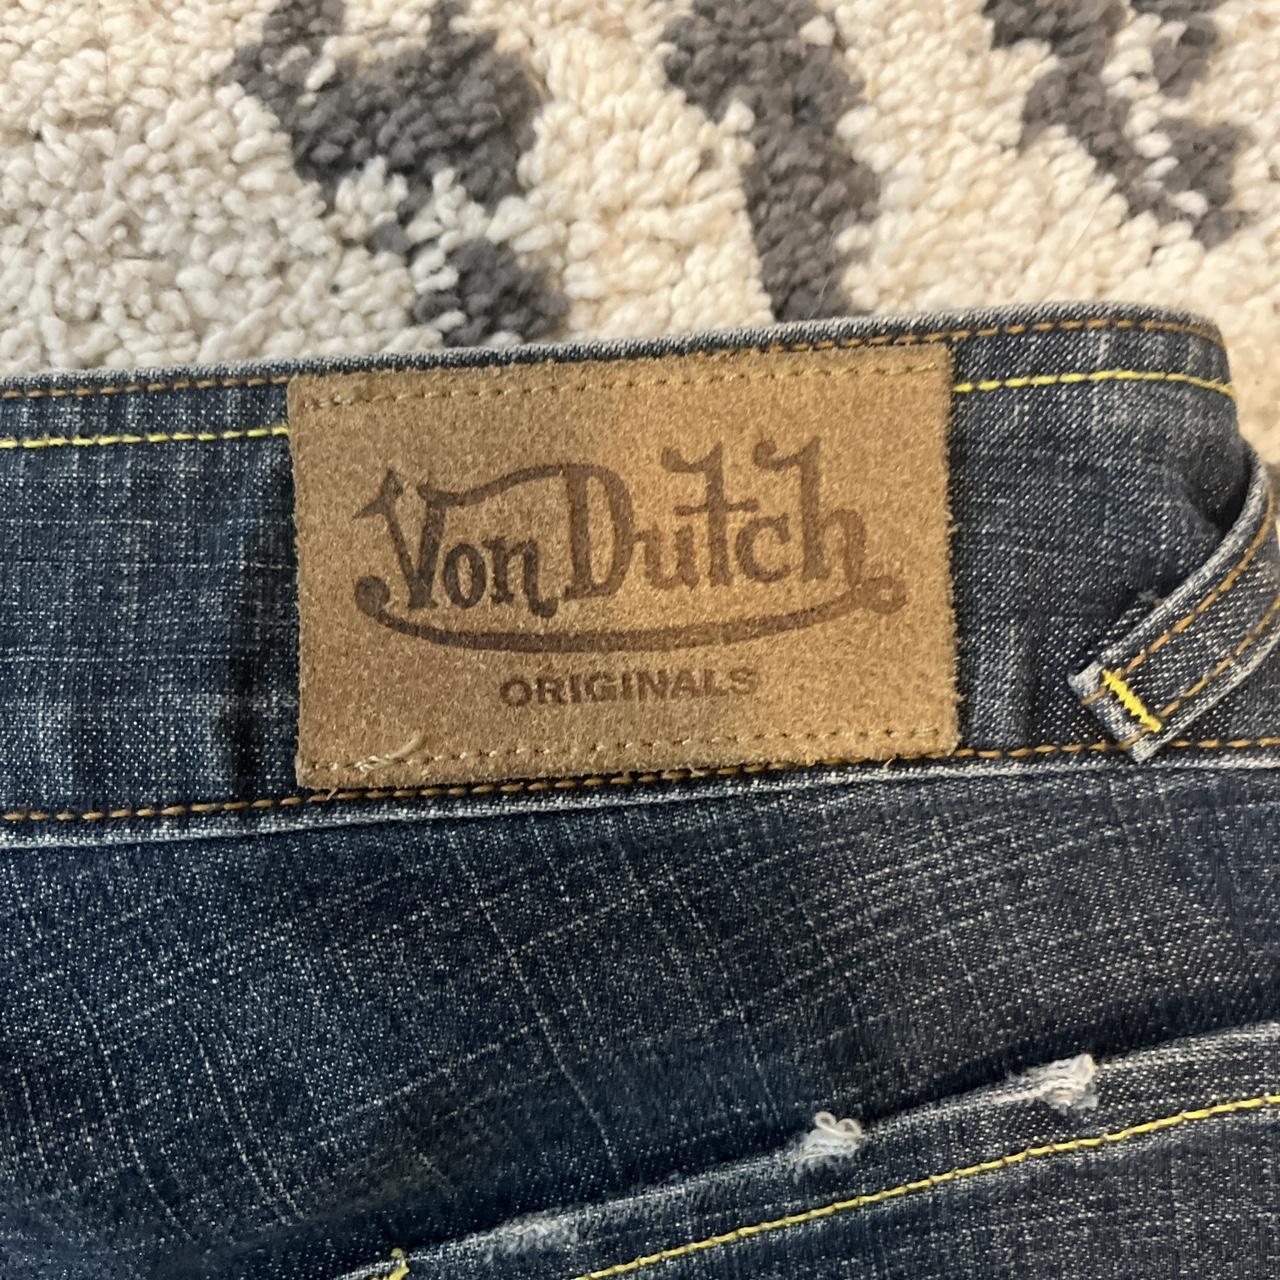 VON DUTCH lowrise medium wash flared jeans with the... - Depop